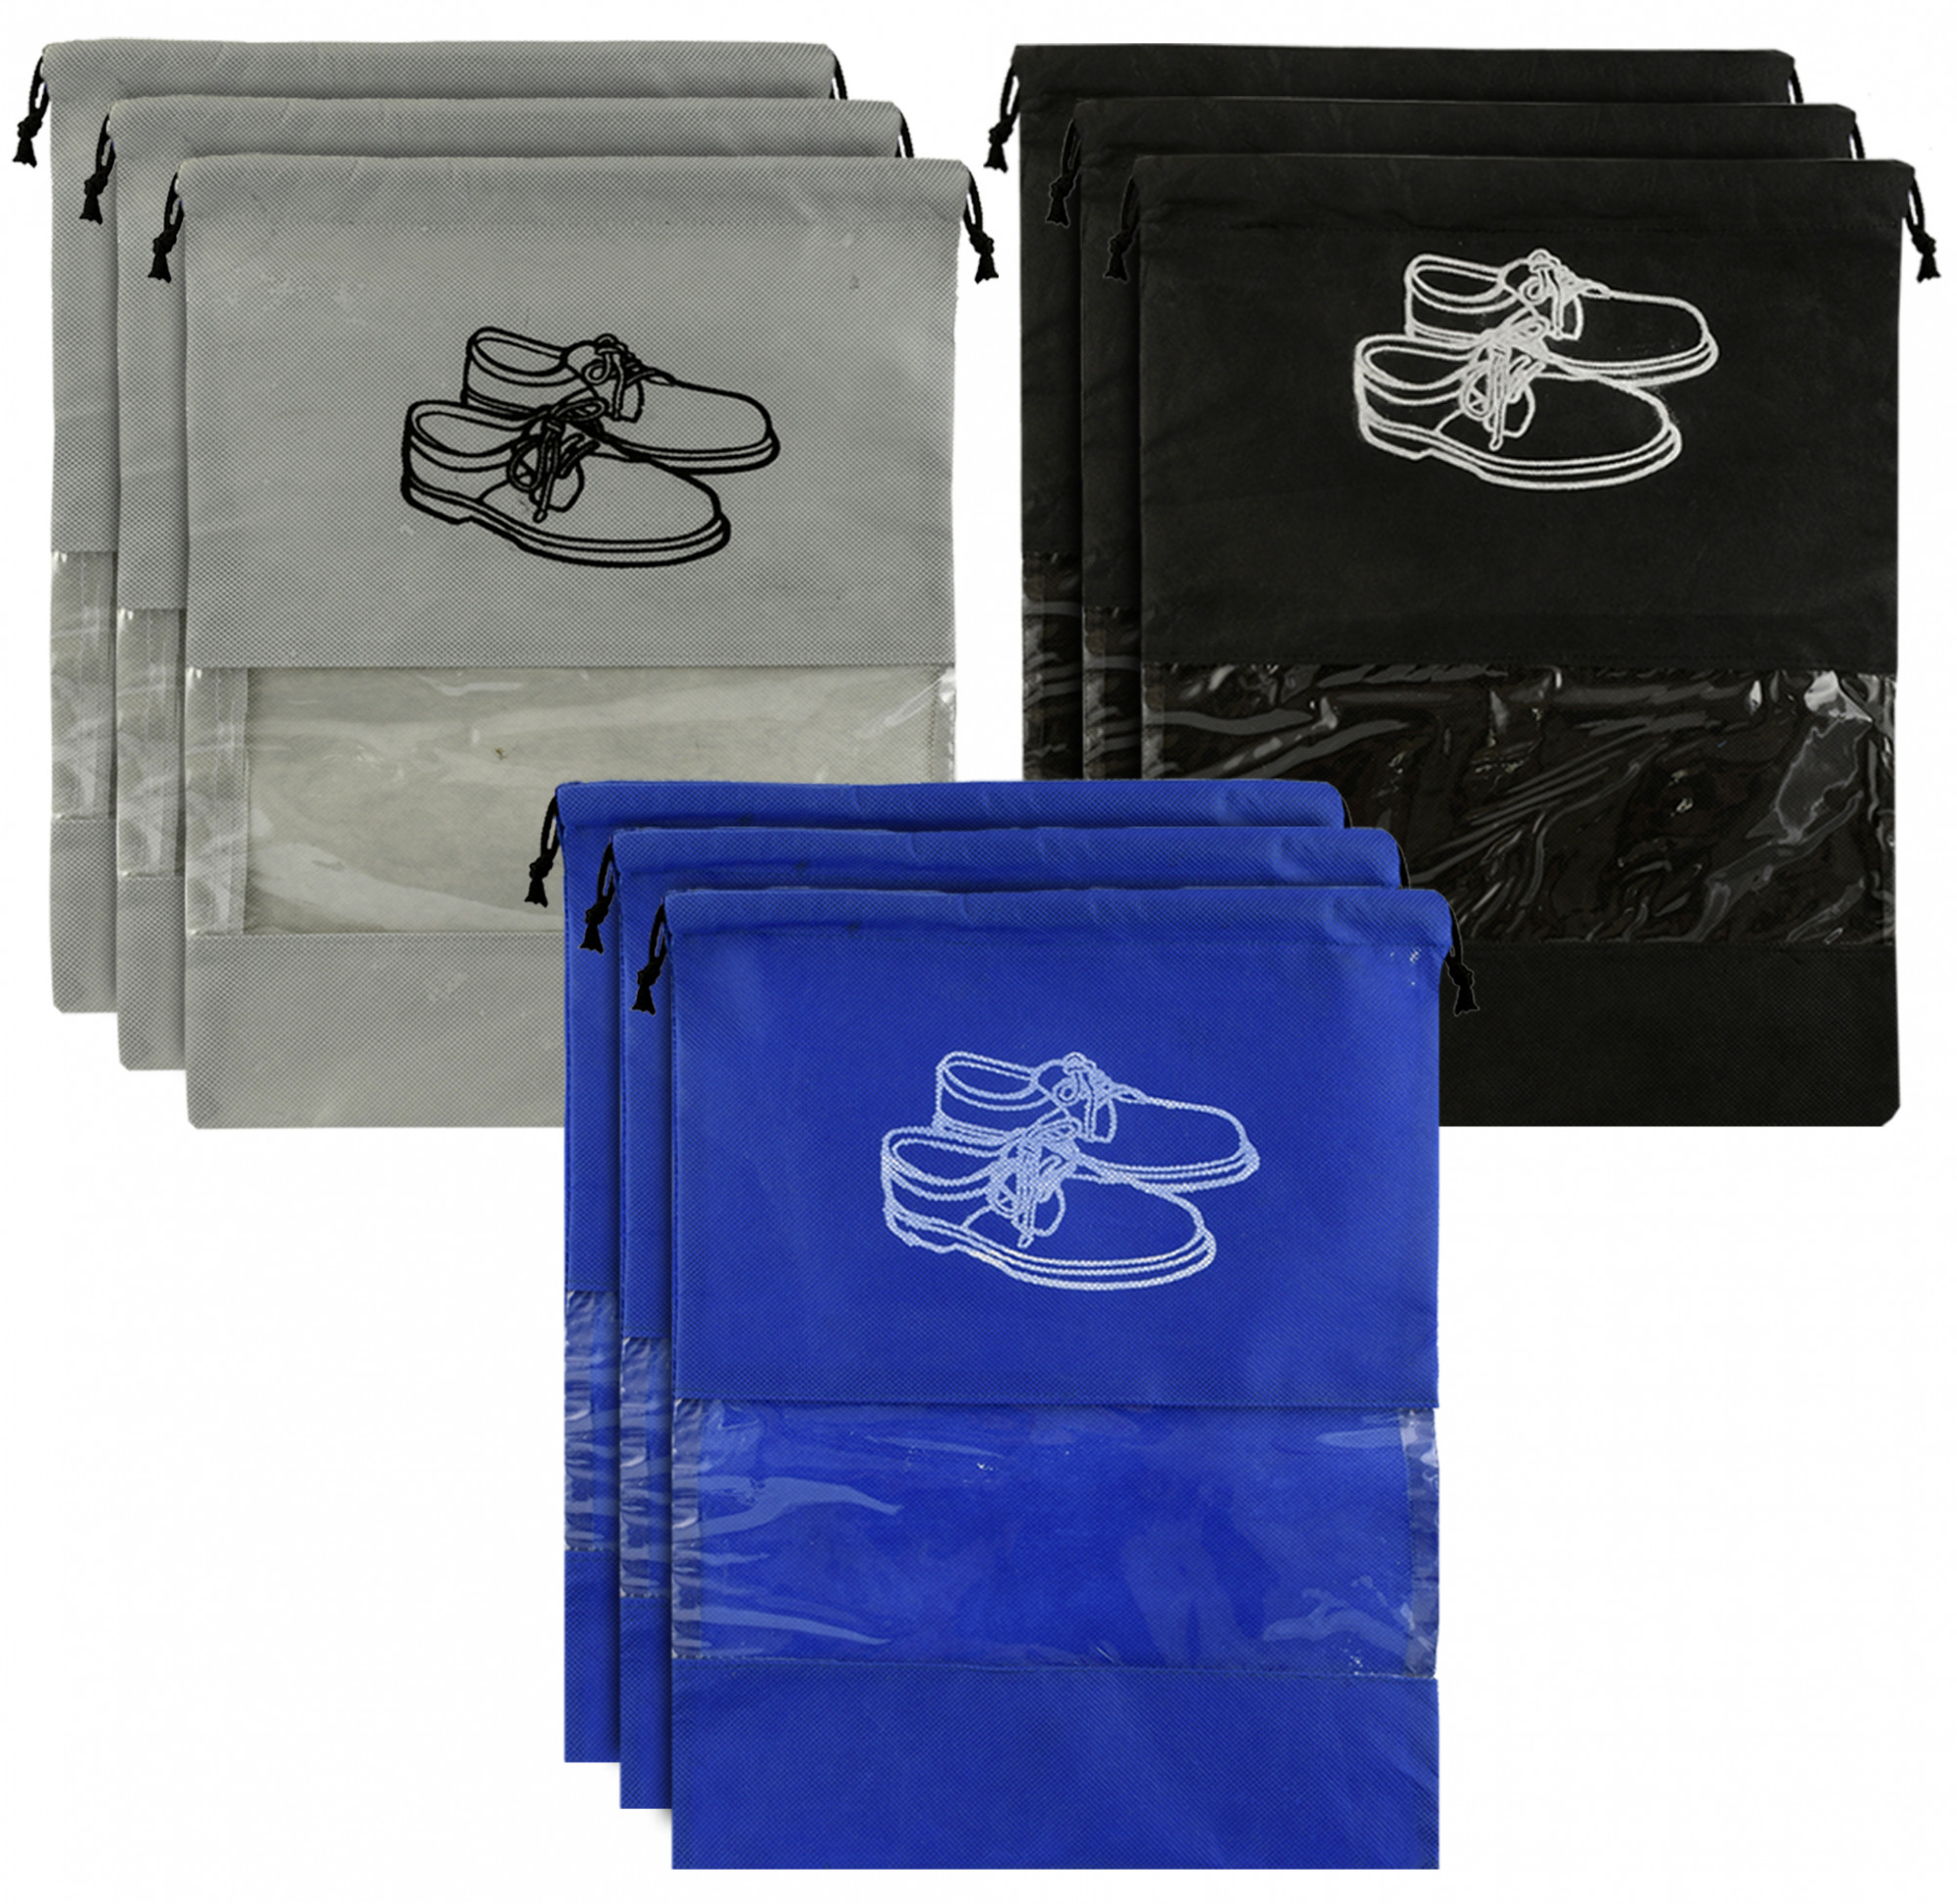 Kuber Industries Non Woven Travel Shoe Organizer Space Saving Fabric Storage Bags Organizer (Grey & Royal Blue & Black)-KUBMART958